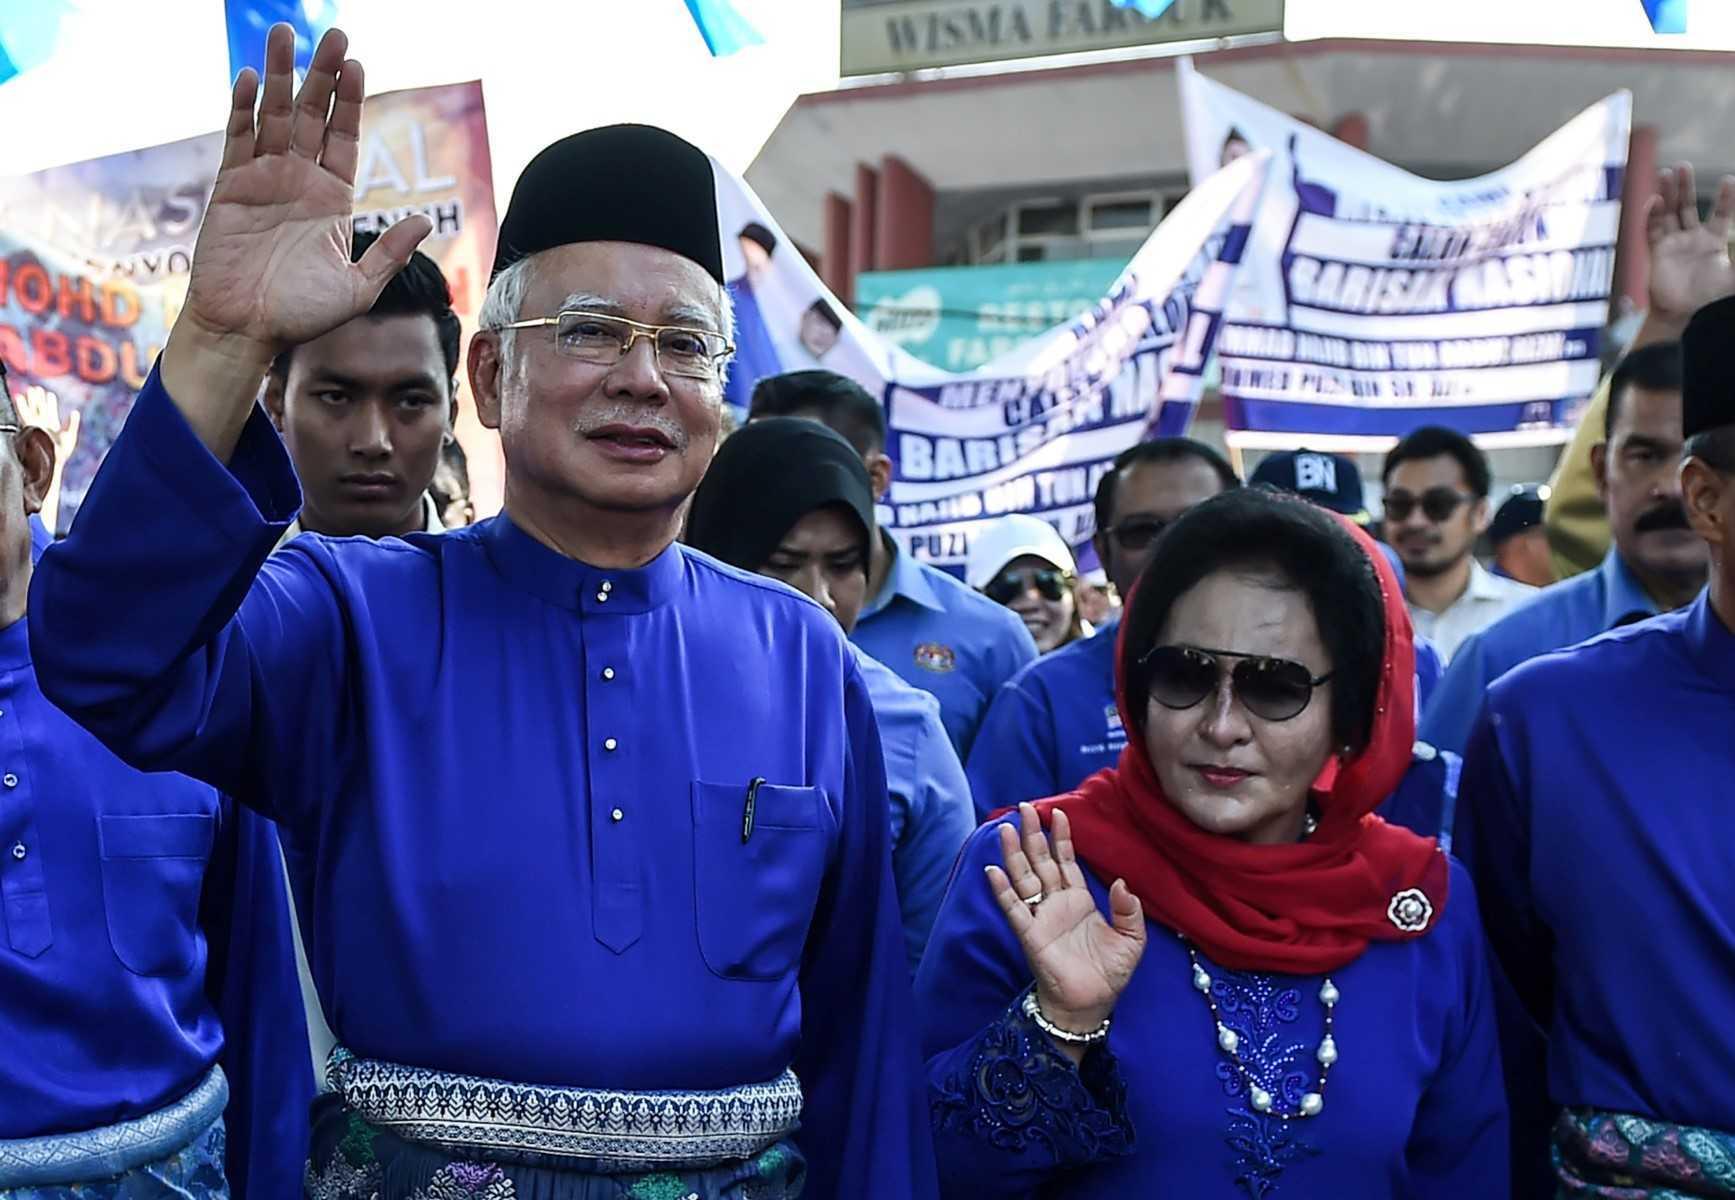 Bekas perdana menteri Najib Razak dan isteri Rosmah Mansor melambaikan tangan ketika pusat penamaan calon di Pekan pada pilihan raya umum 2018. Gambar: AFP